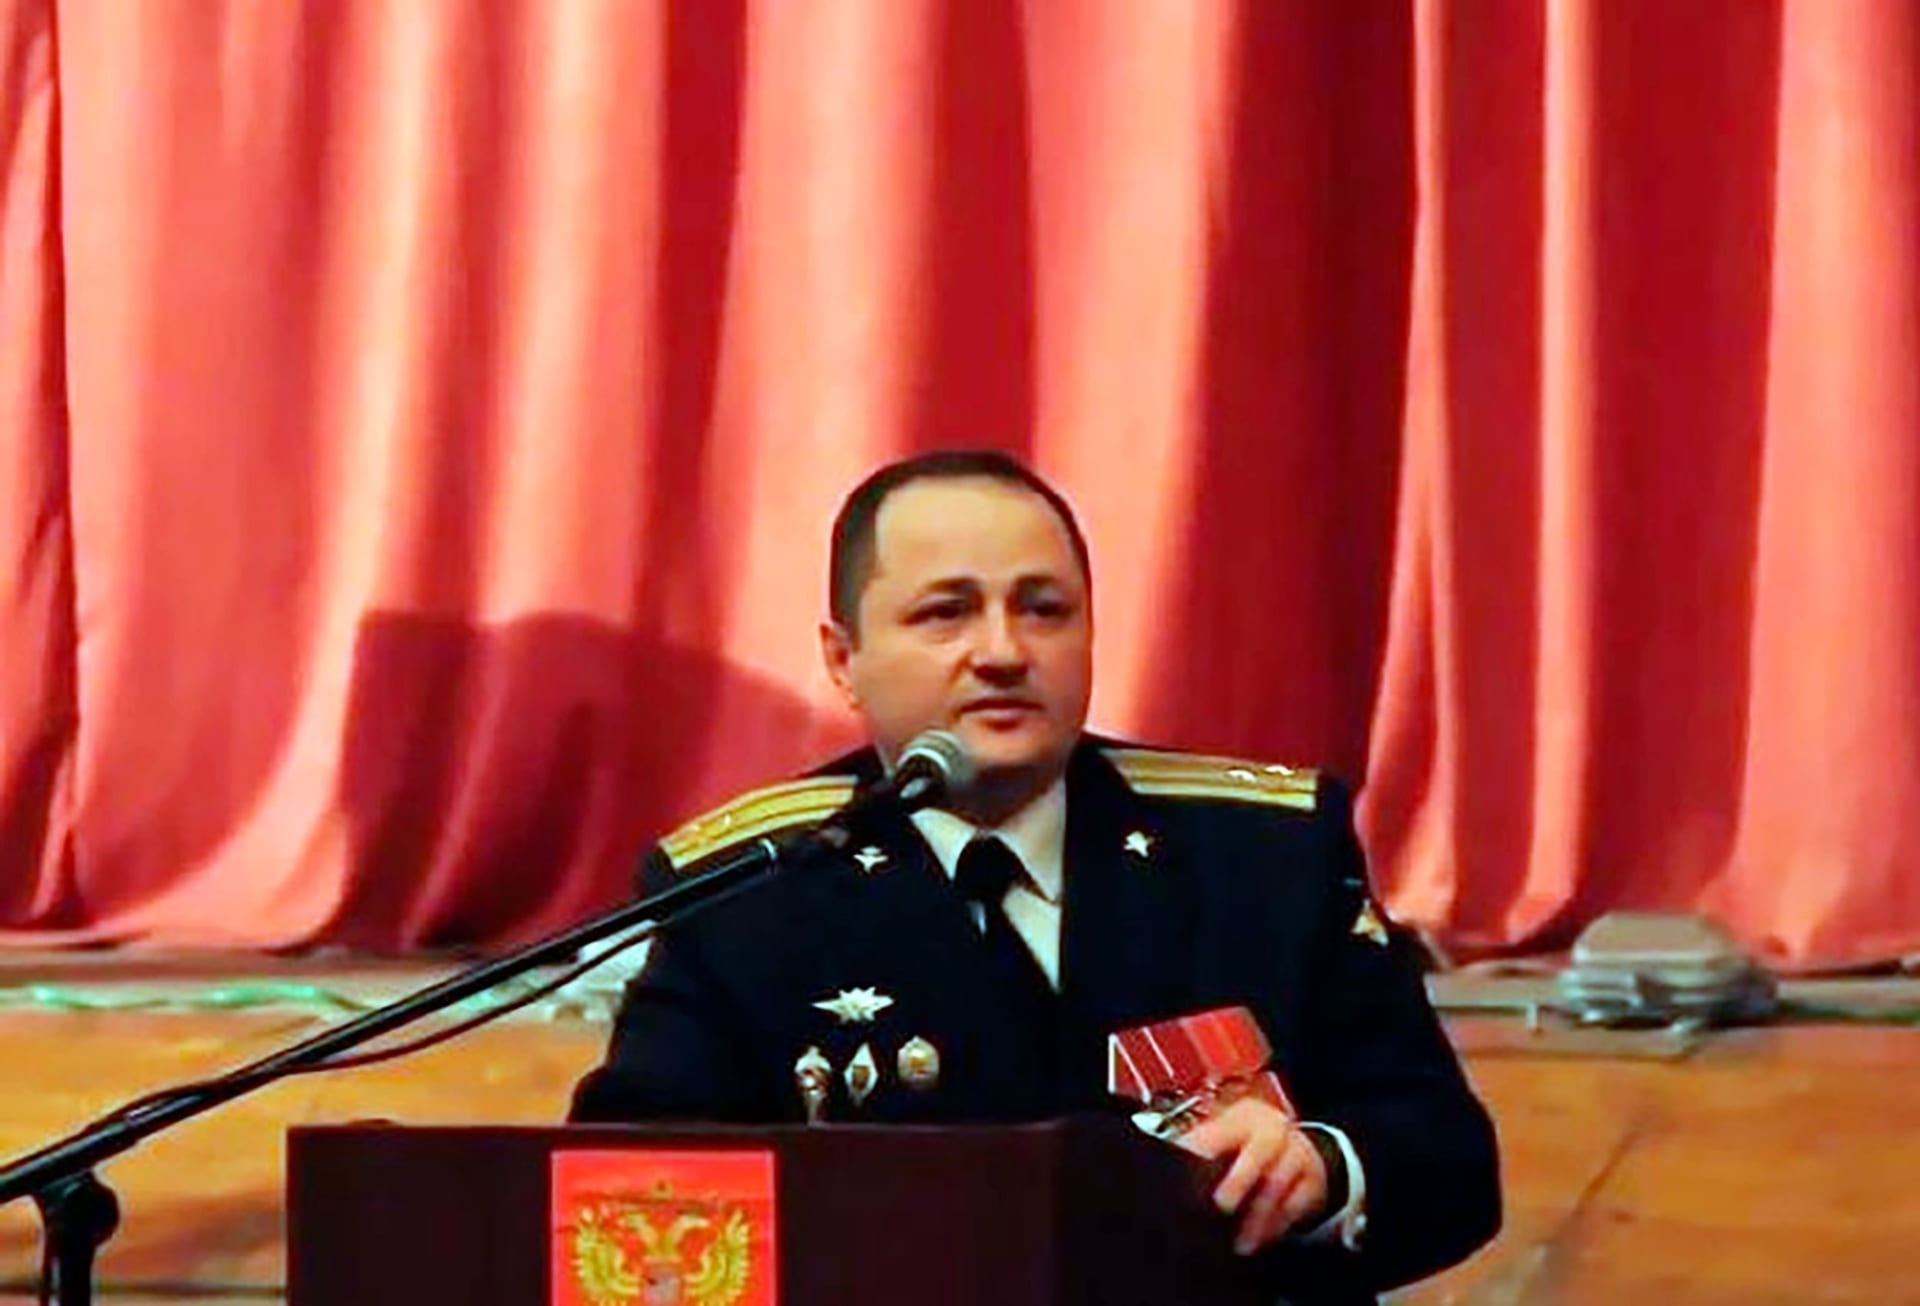 Ruský generálmajor Oleg Miťajev, který padl na Ukrajině (datum pořízení snímku neznámé).